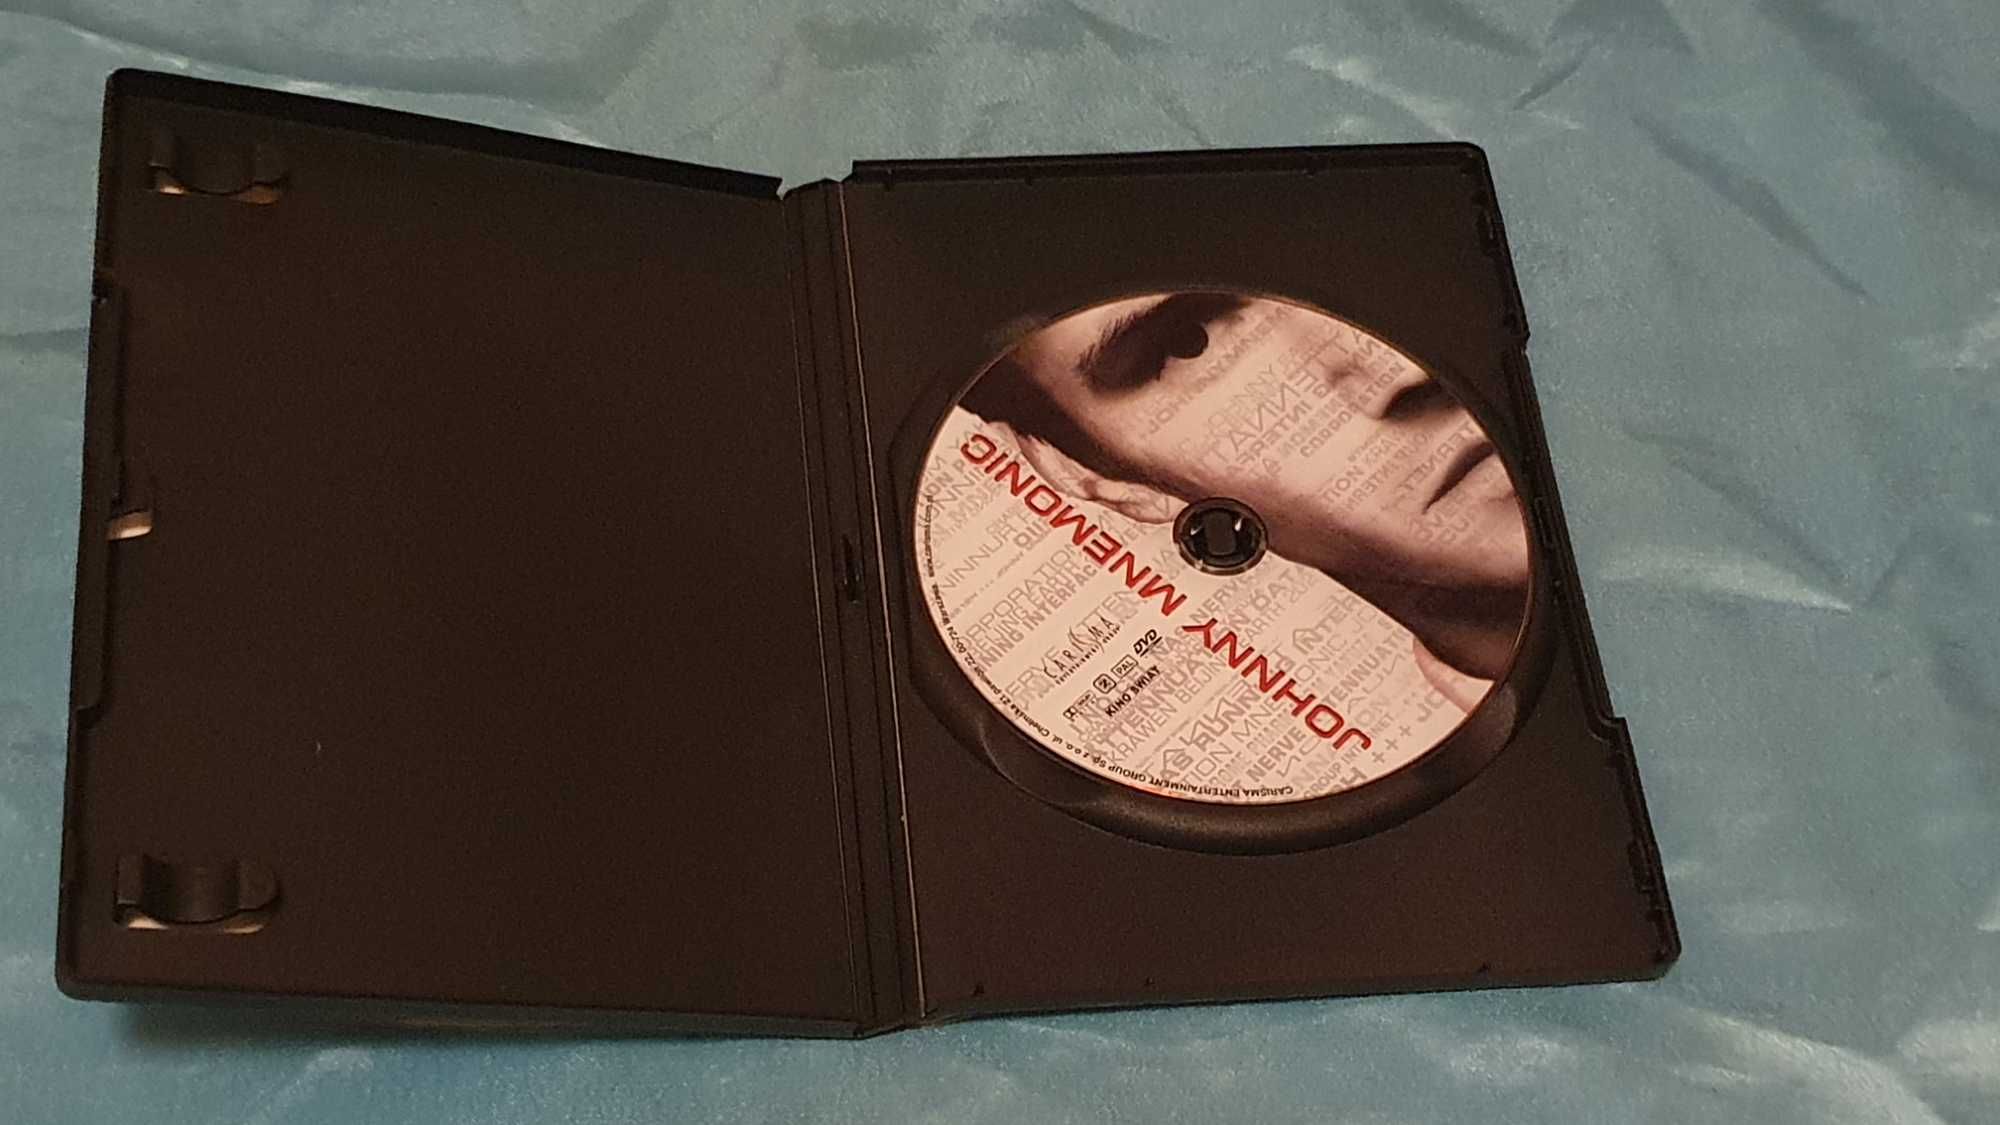 Johnny Mnemonic  (1995)  DVD